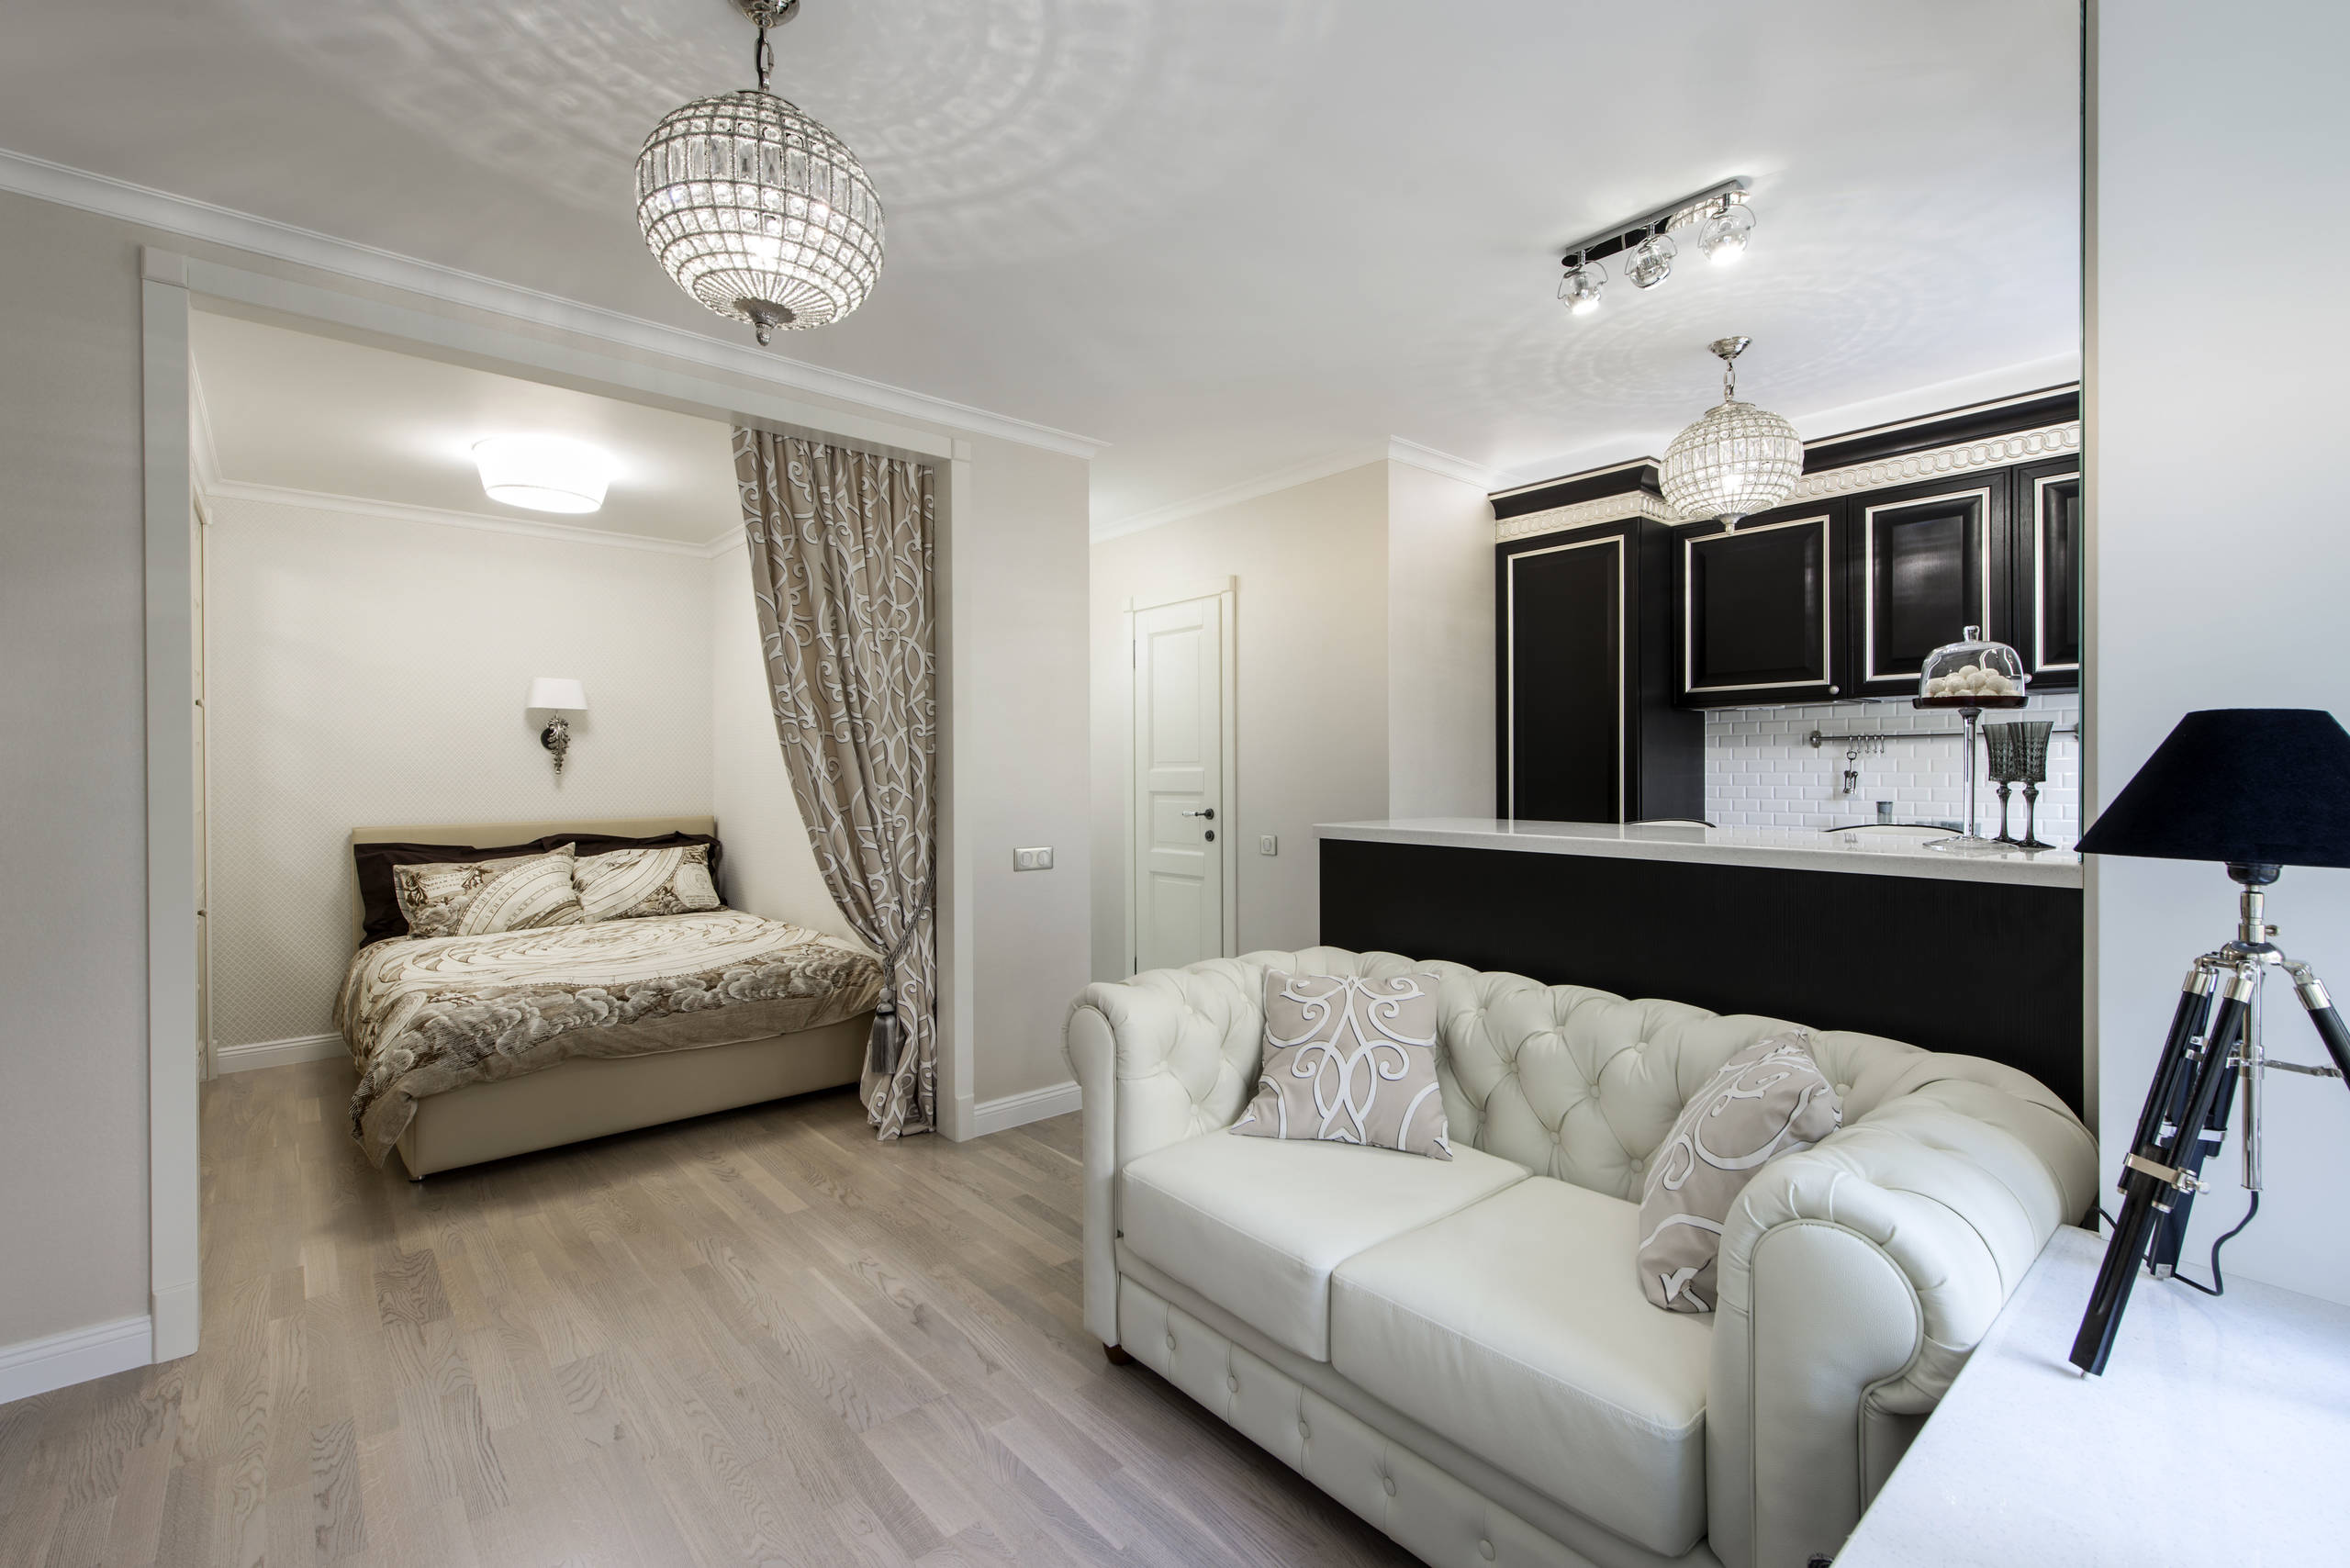 Дизайн спальни-гостиной площадью 18 кв. м: идеи меблировки, зонирования и оформления